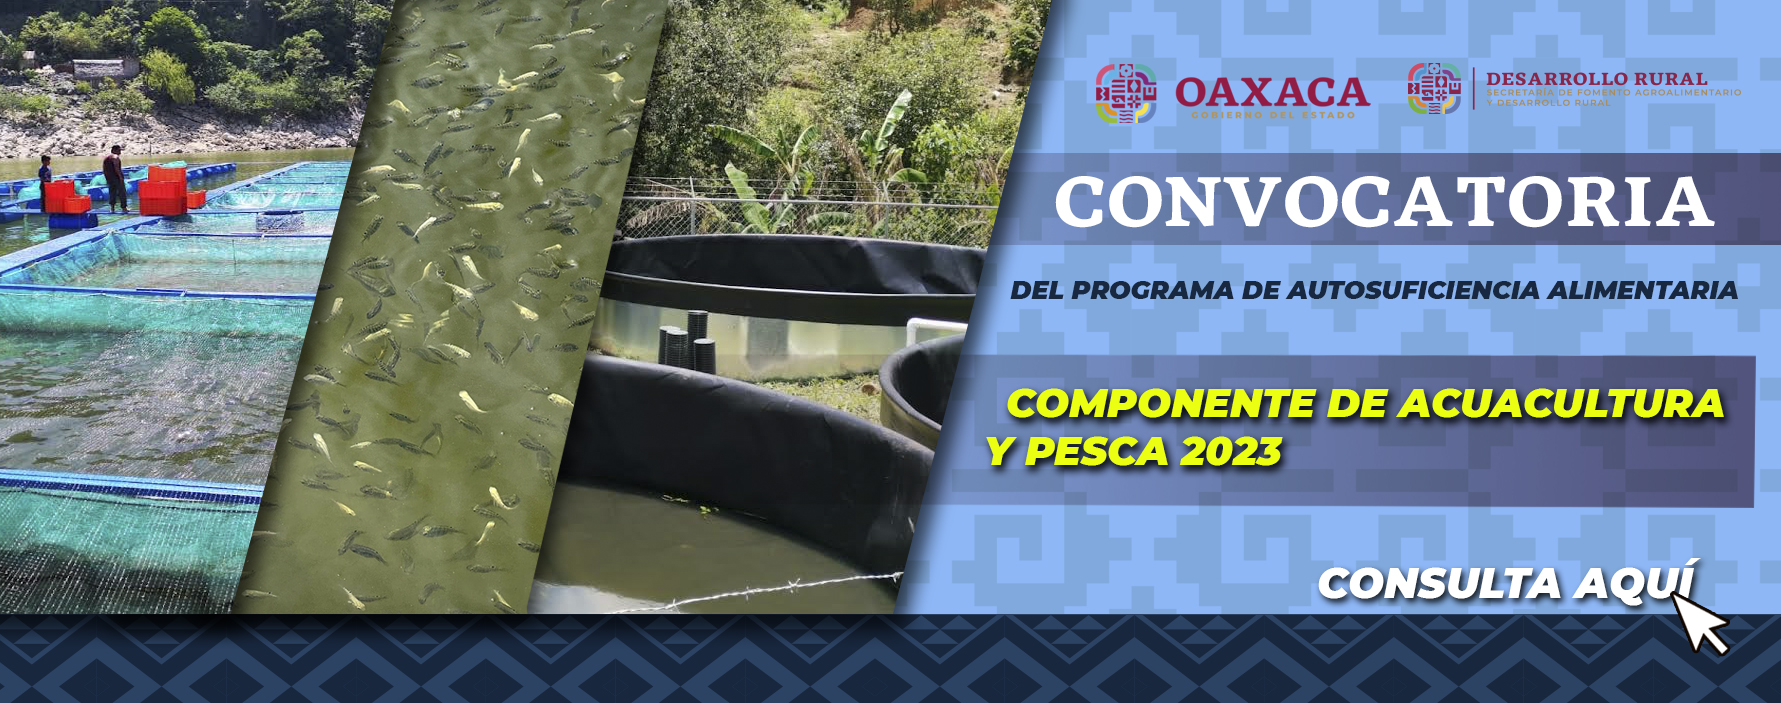 CONVOCATORIA DEL PROGRAMA DE AUTOSUFICIENCIA ALIMENTARIA, COMPONENTE DE ACUACULTURA Y PESCA, EJERCICIO 2023.